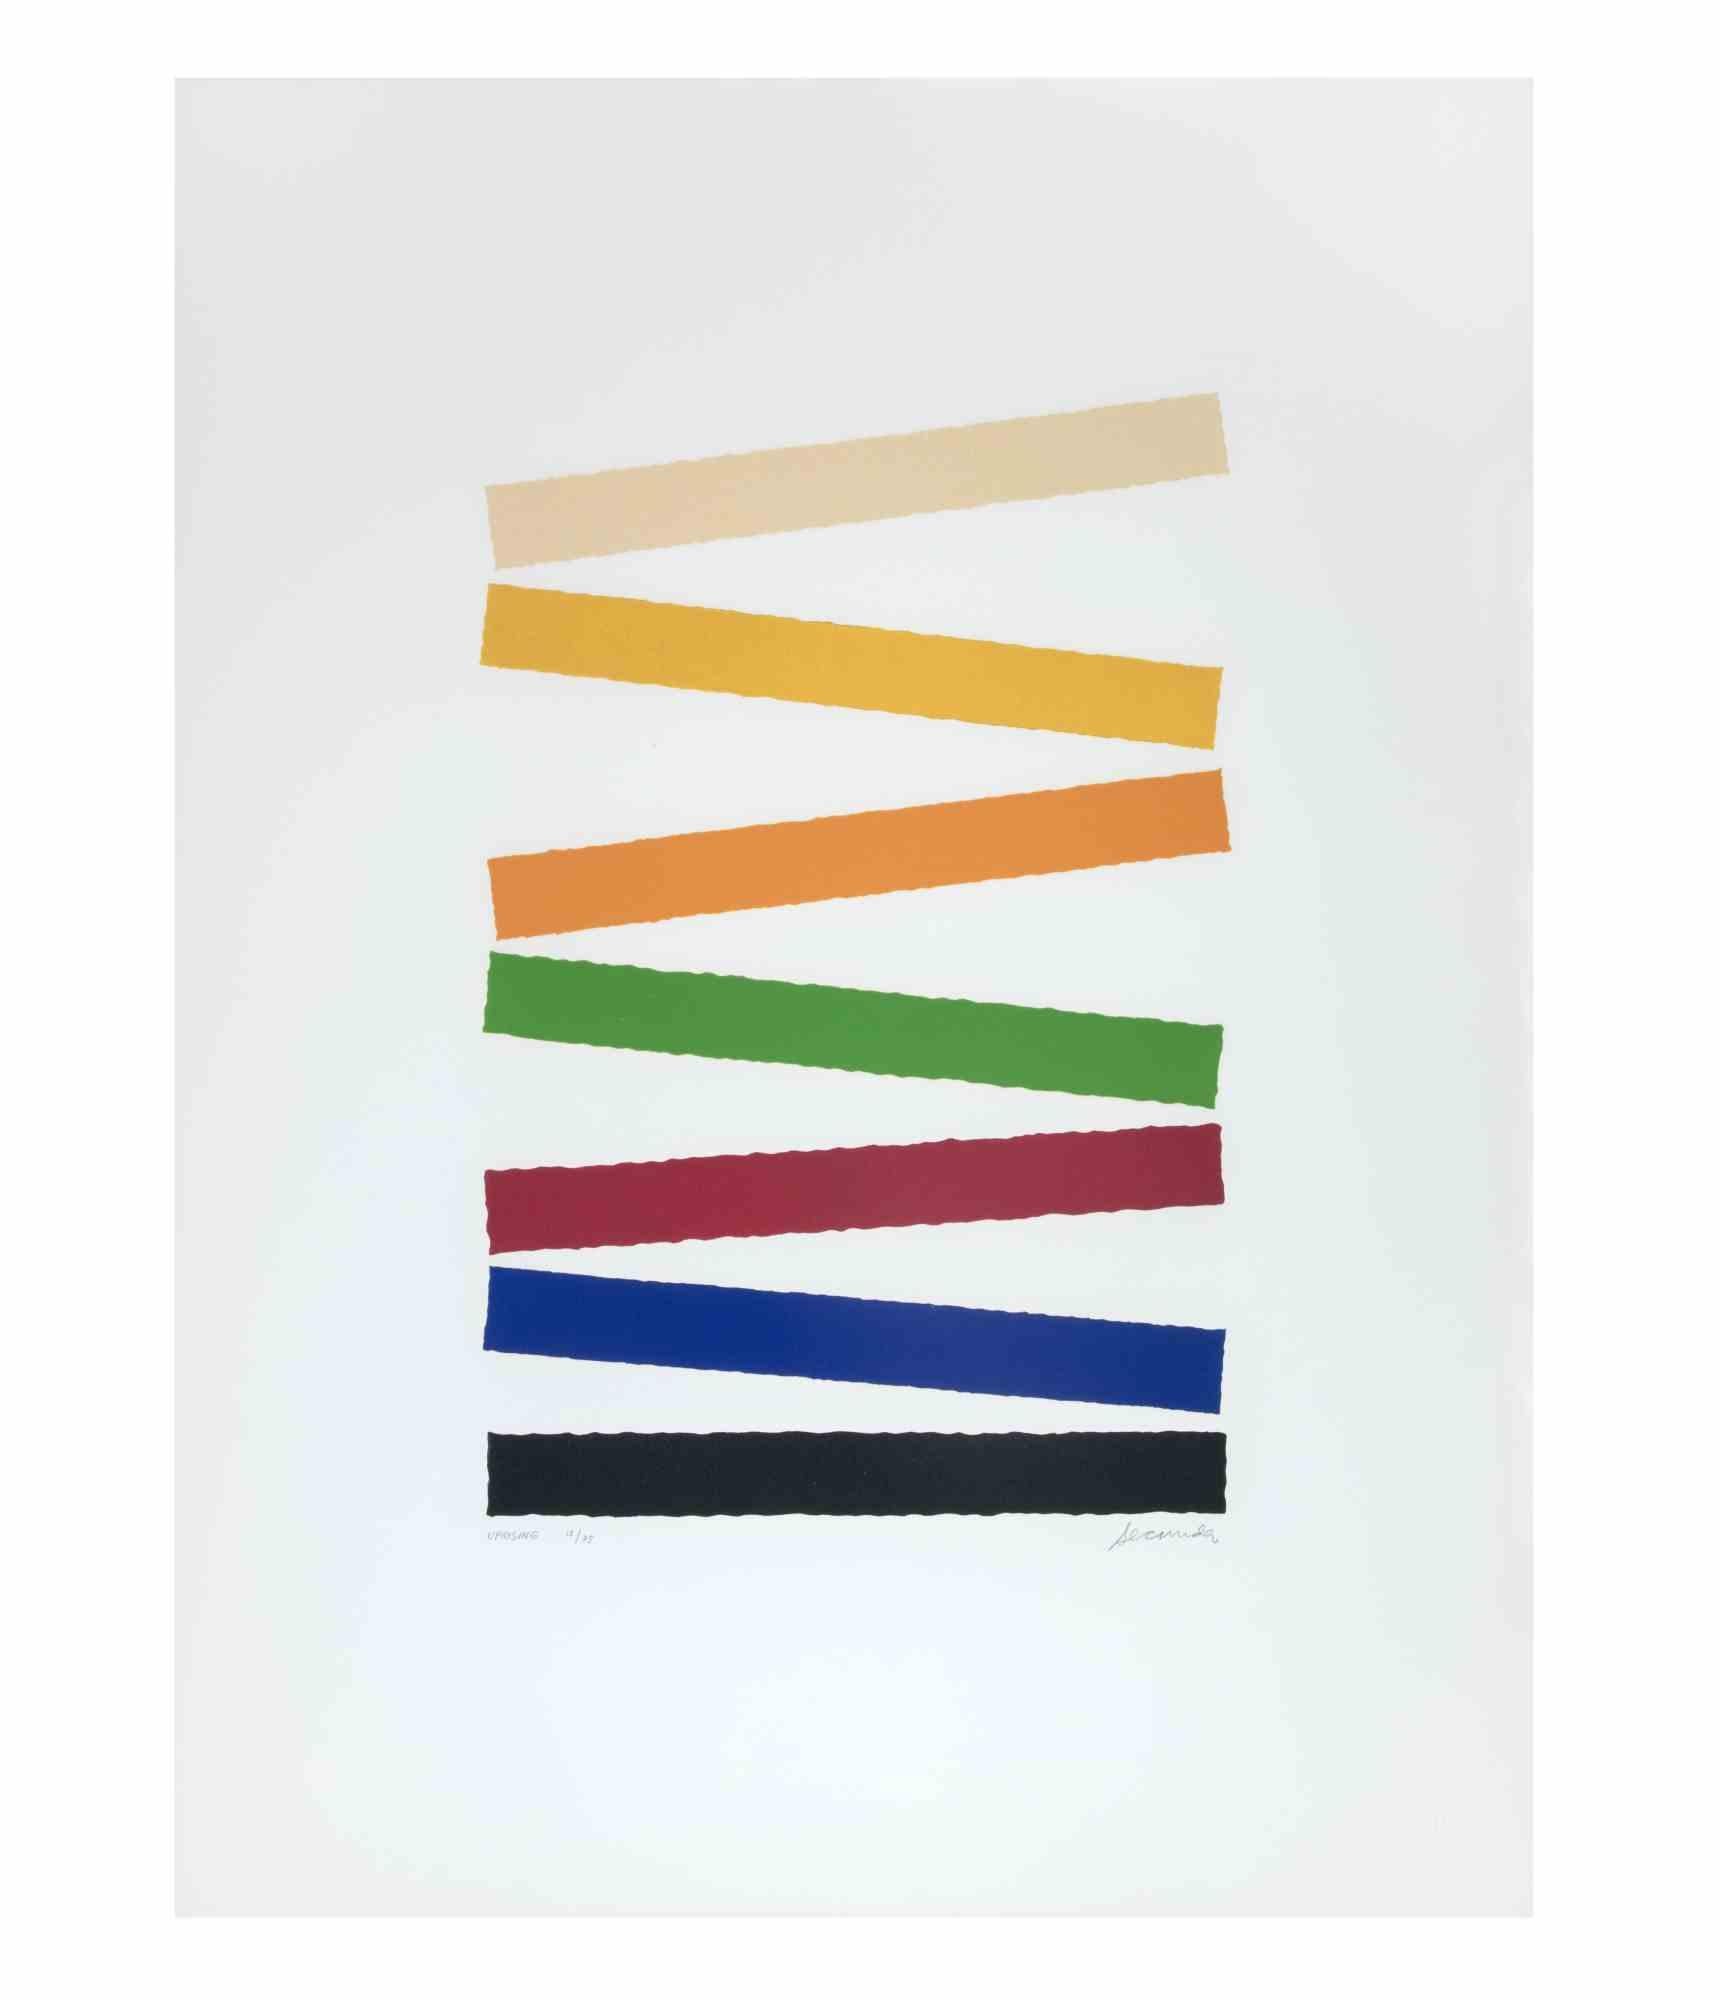 Uprising ist ein zeitgenössisches Kunstwerk von Arthur Secunda aus dem Jahr 1979.

Gemischtfarbige Radierung.

Handsigniert am unteren Rand.

Am linken unteren Rand nummeriert und betitelt.

Ausgabe von 12/75

Arthur Secunda (1927-2022) war ein